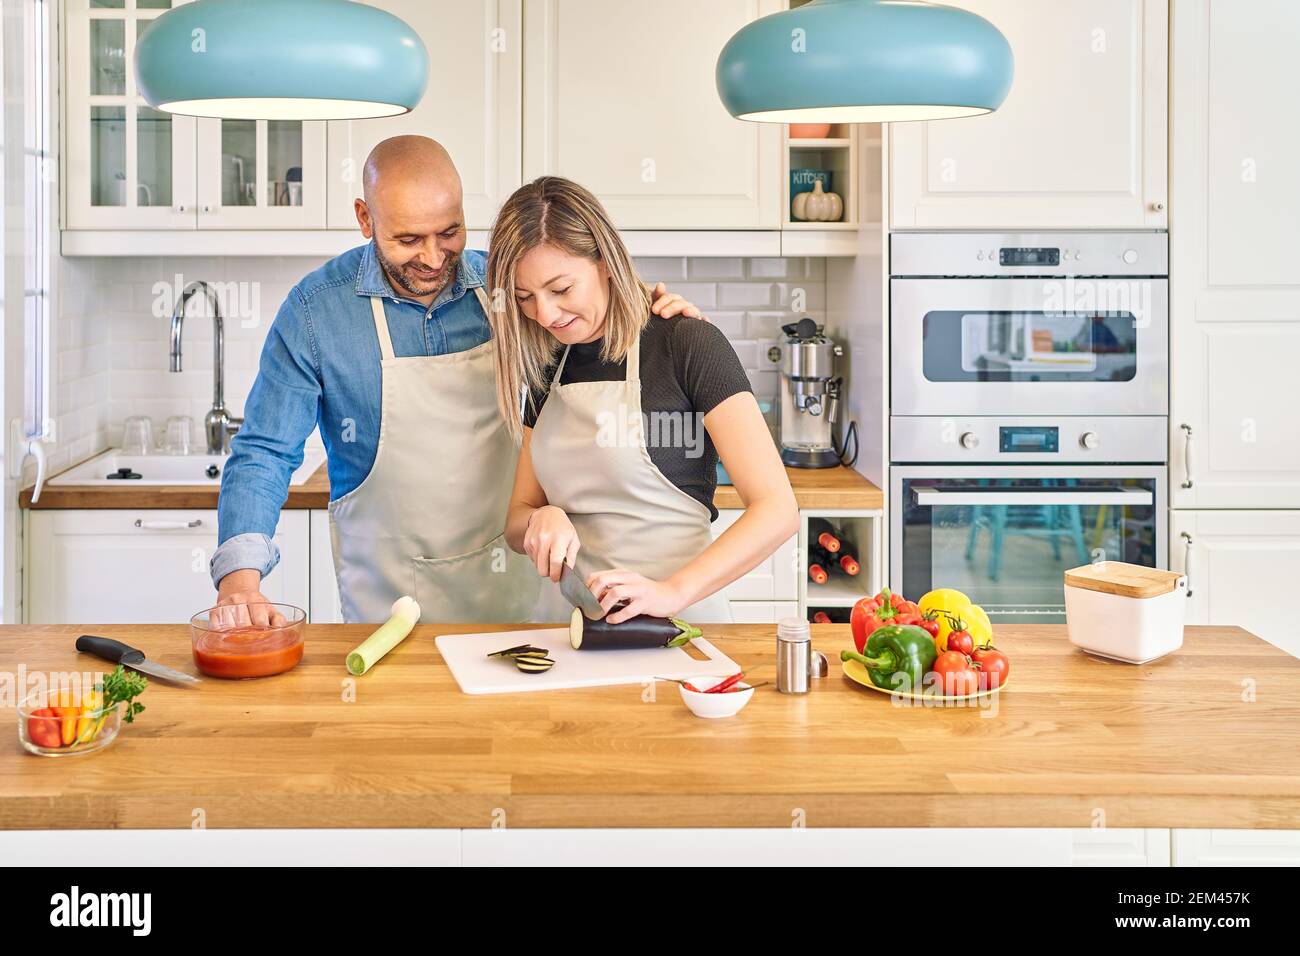 Una giovane coppia felice sta gustando e preparando un pasto sano nella loro cucina. Sta tagliando le verdure mentre la guarda Foto Stock